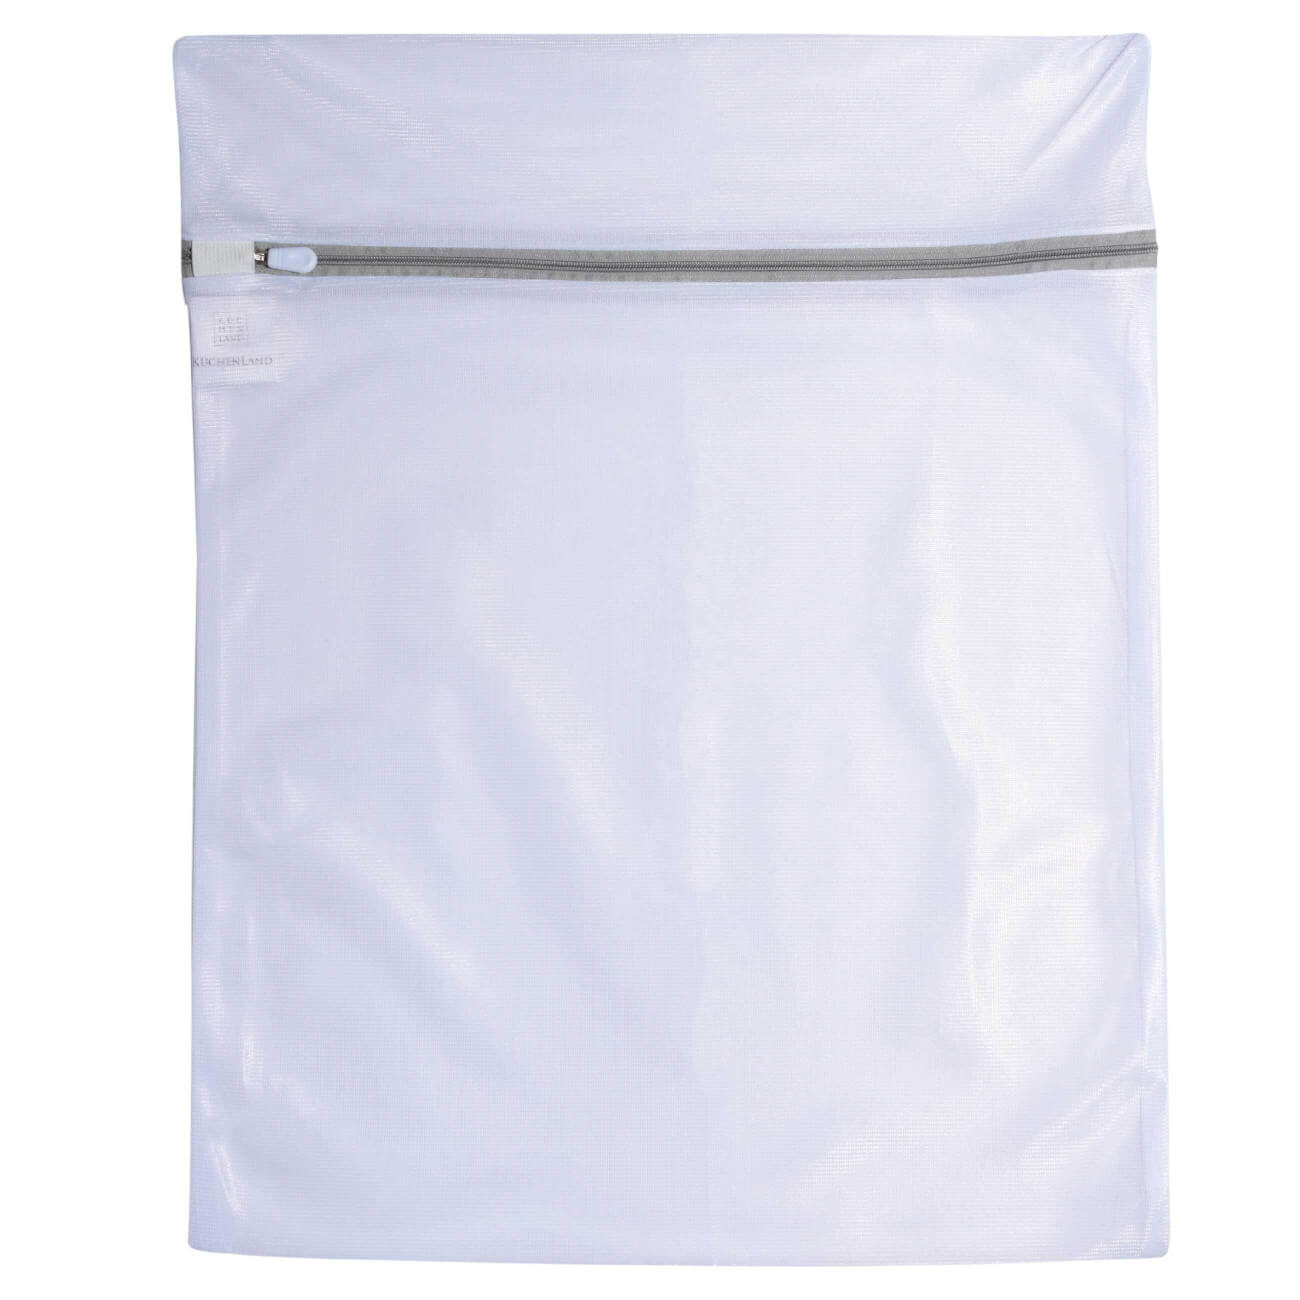 Мешок для стирки одежды, 40х50 см, полиэстер, бело-серый, Safety plus мешок для стирки одежды 40х50 см полиэстер бело серый safety plus